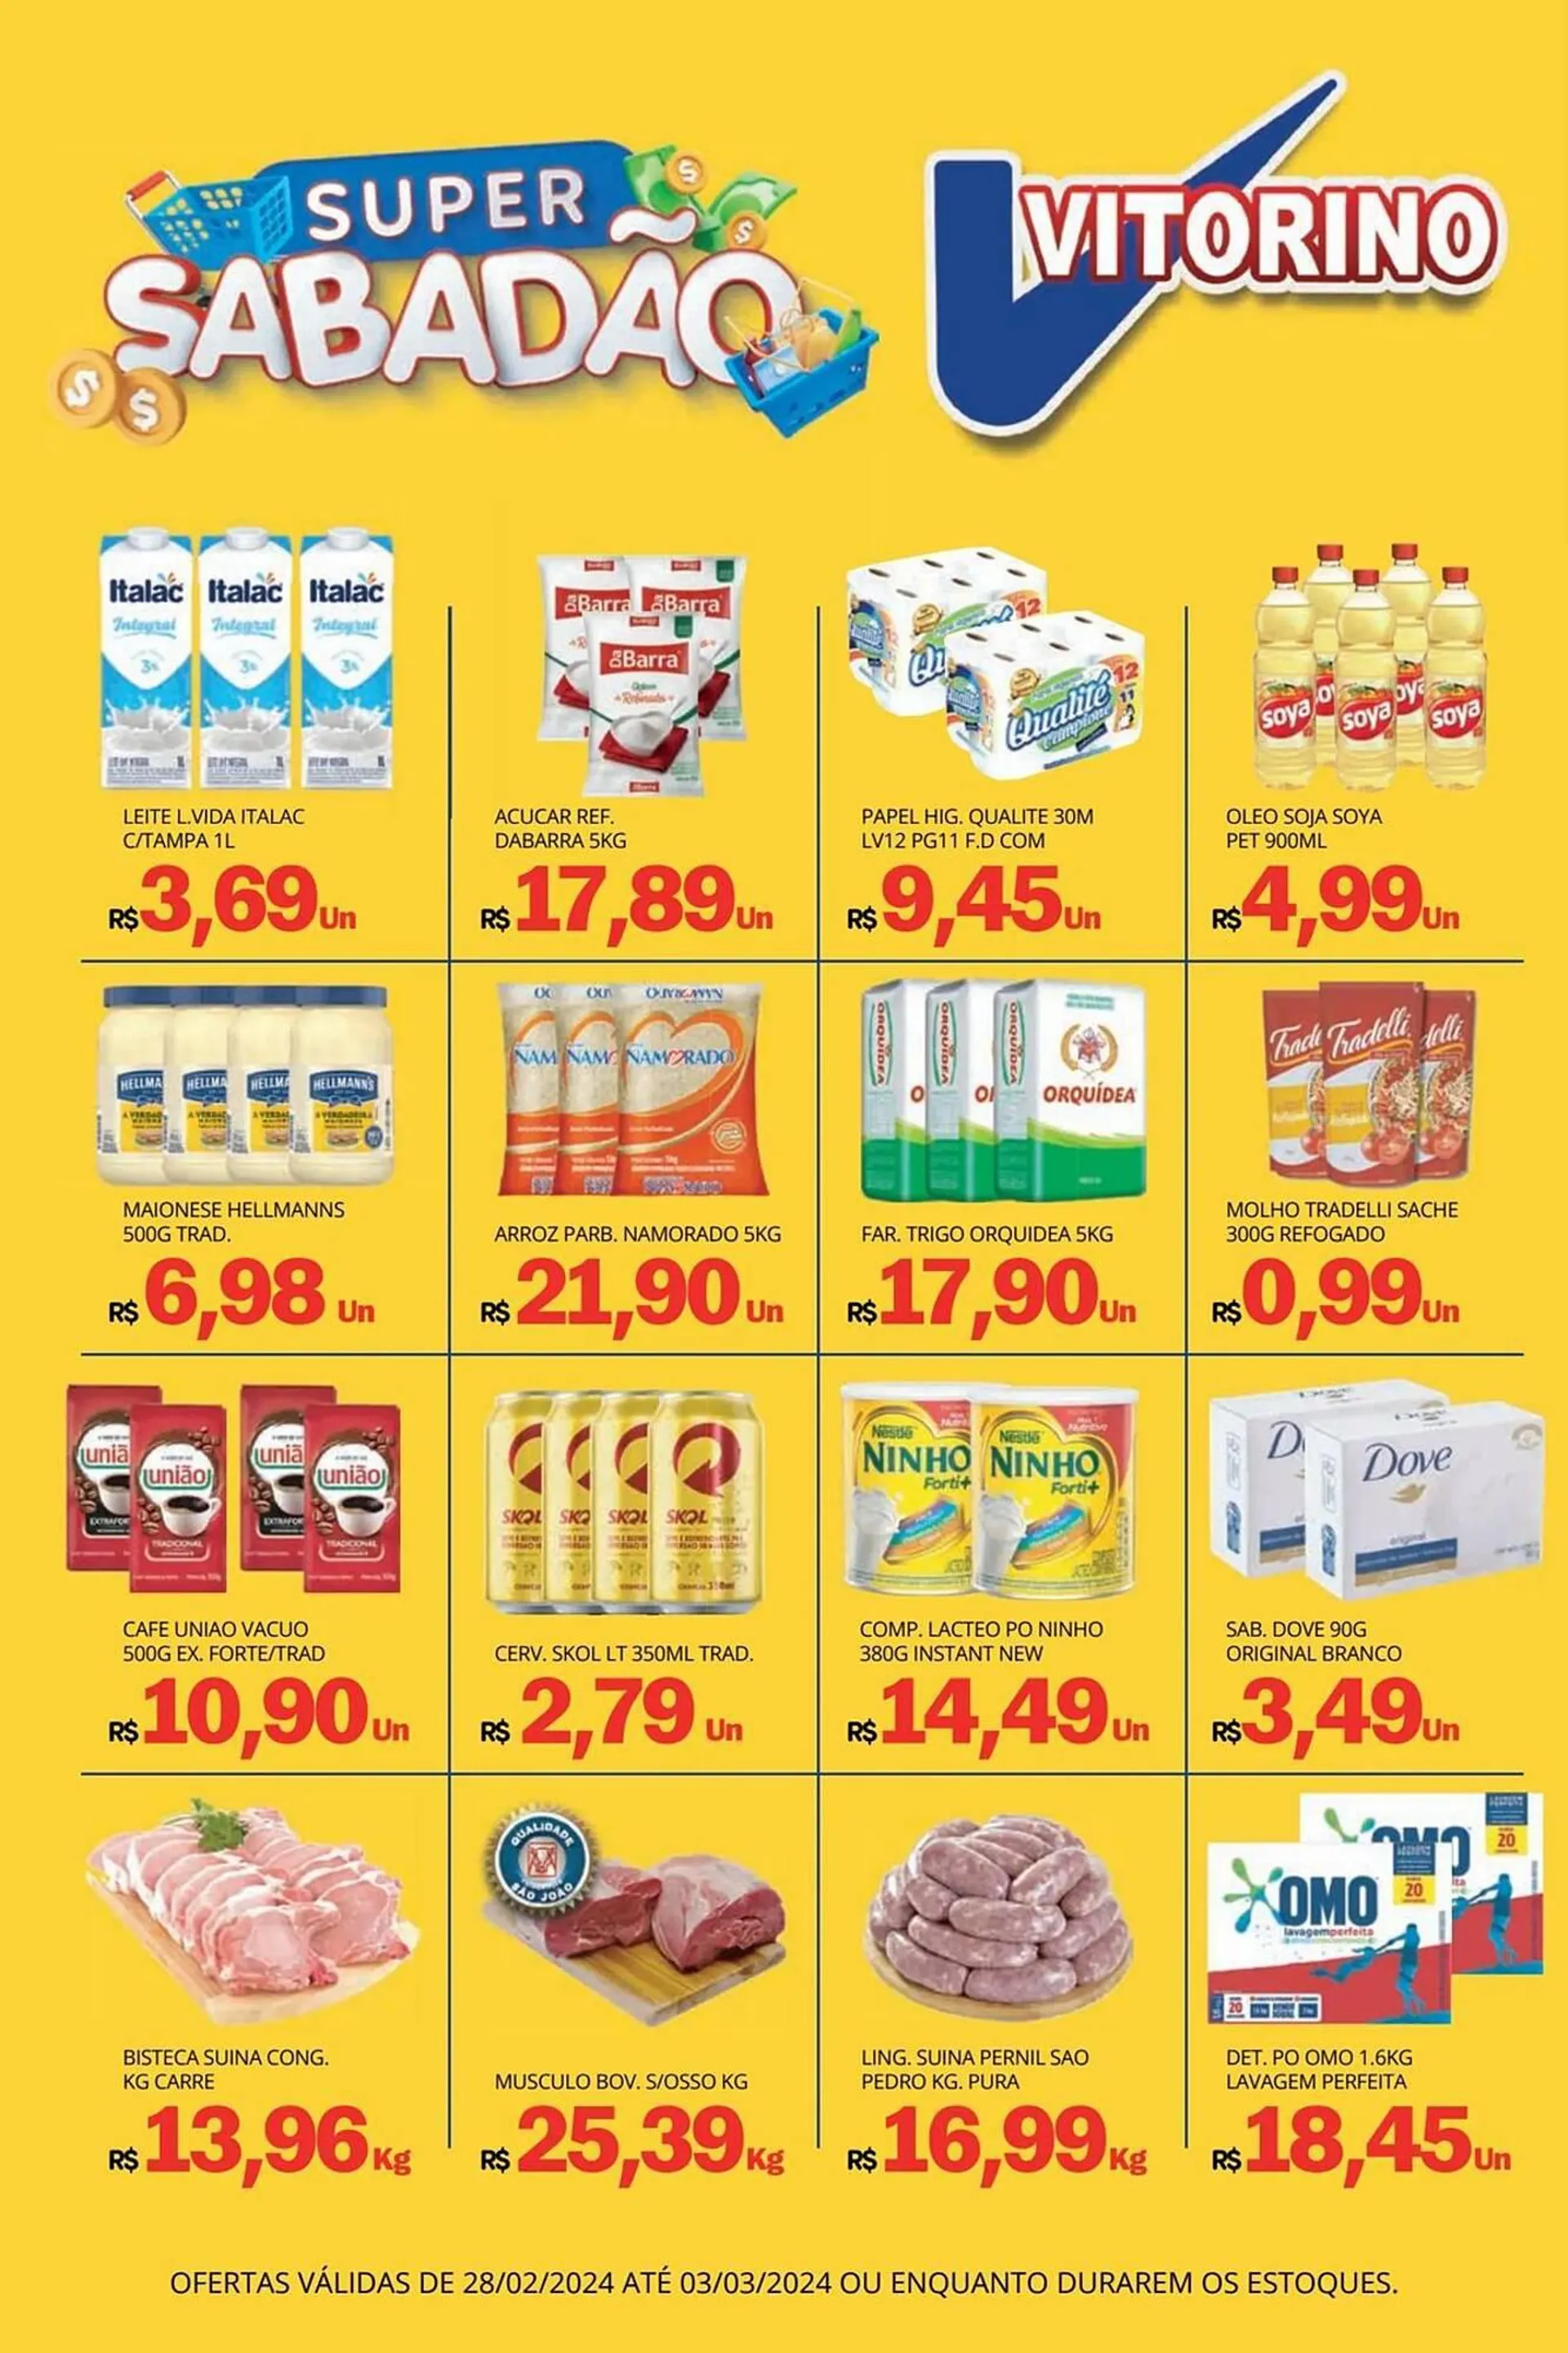 Encarte de Catálogo Supermercado Vitorino 27 de fevereiro até 3 de março 2024 - Pagina 